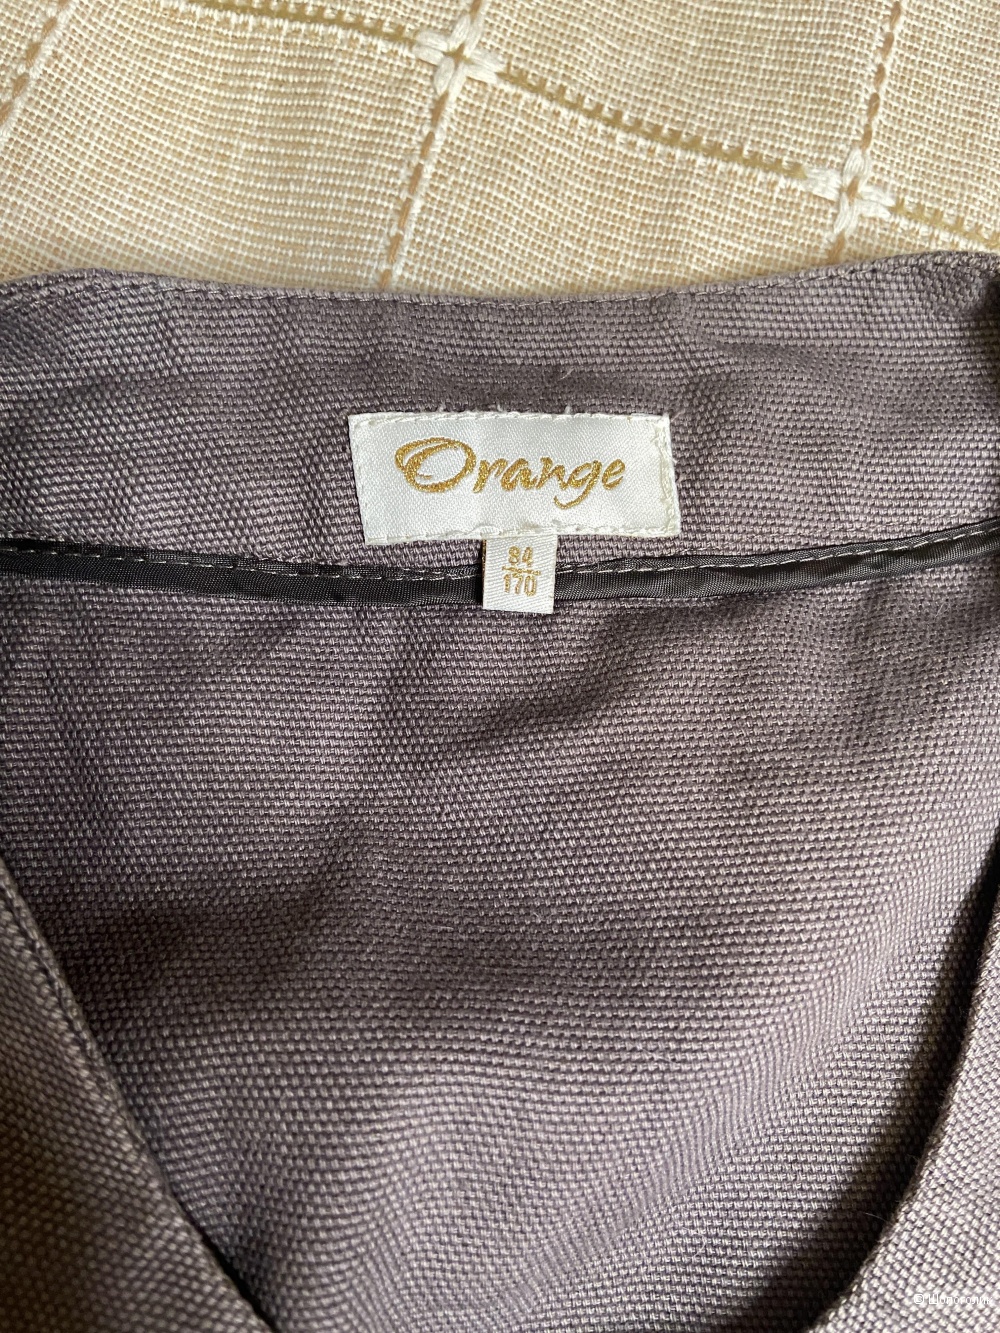 Пальто - жакет Orange, размер 42